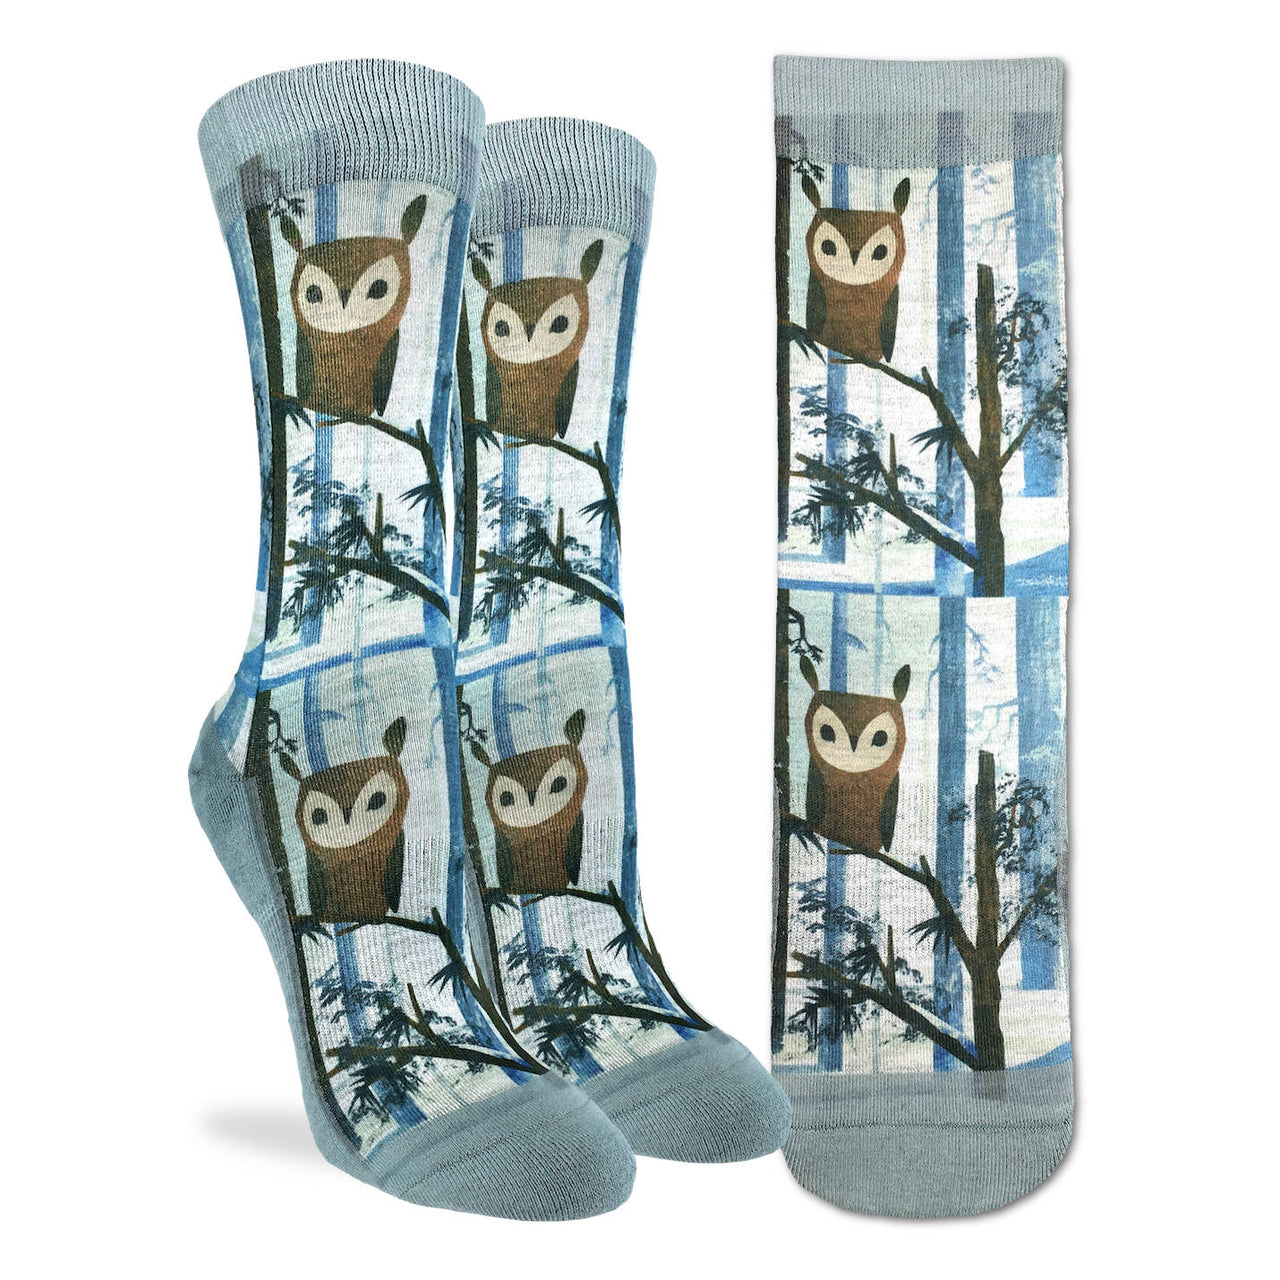 Ladies' Socks - Owls